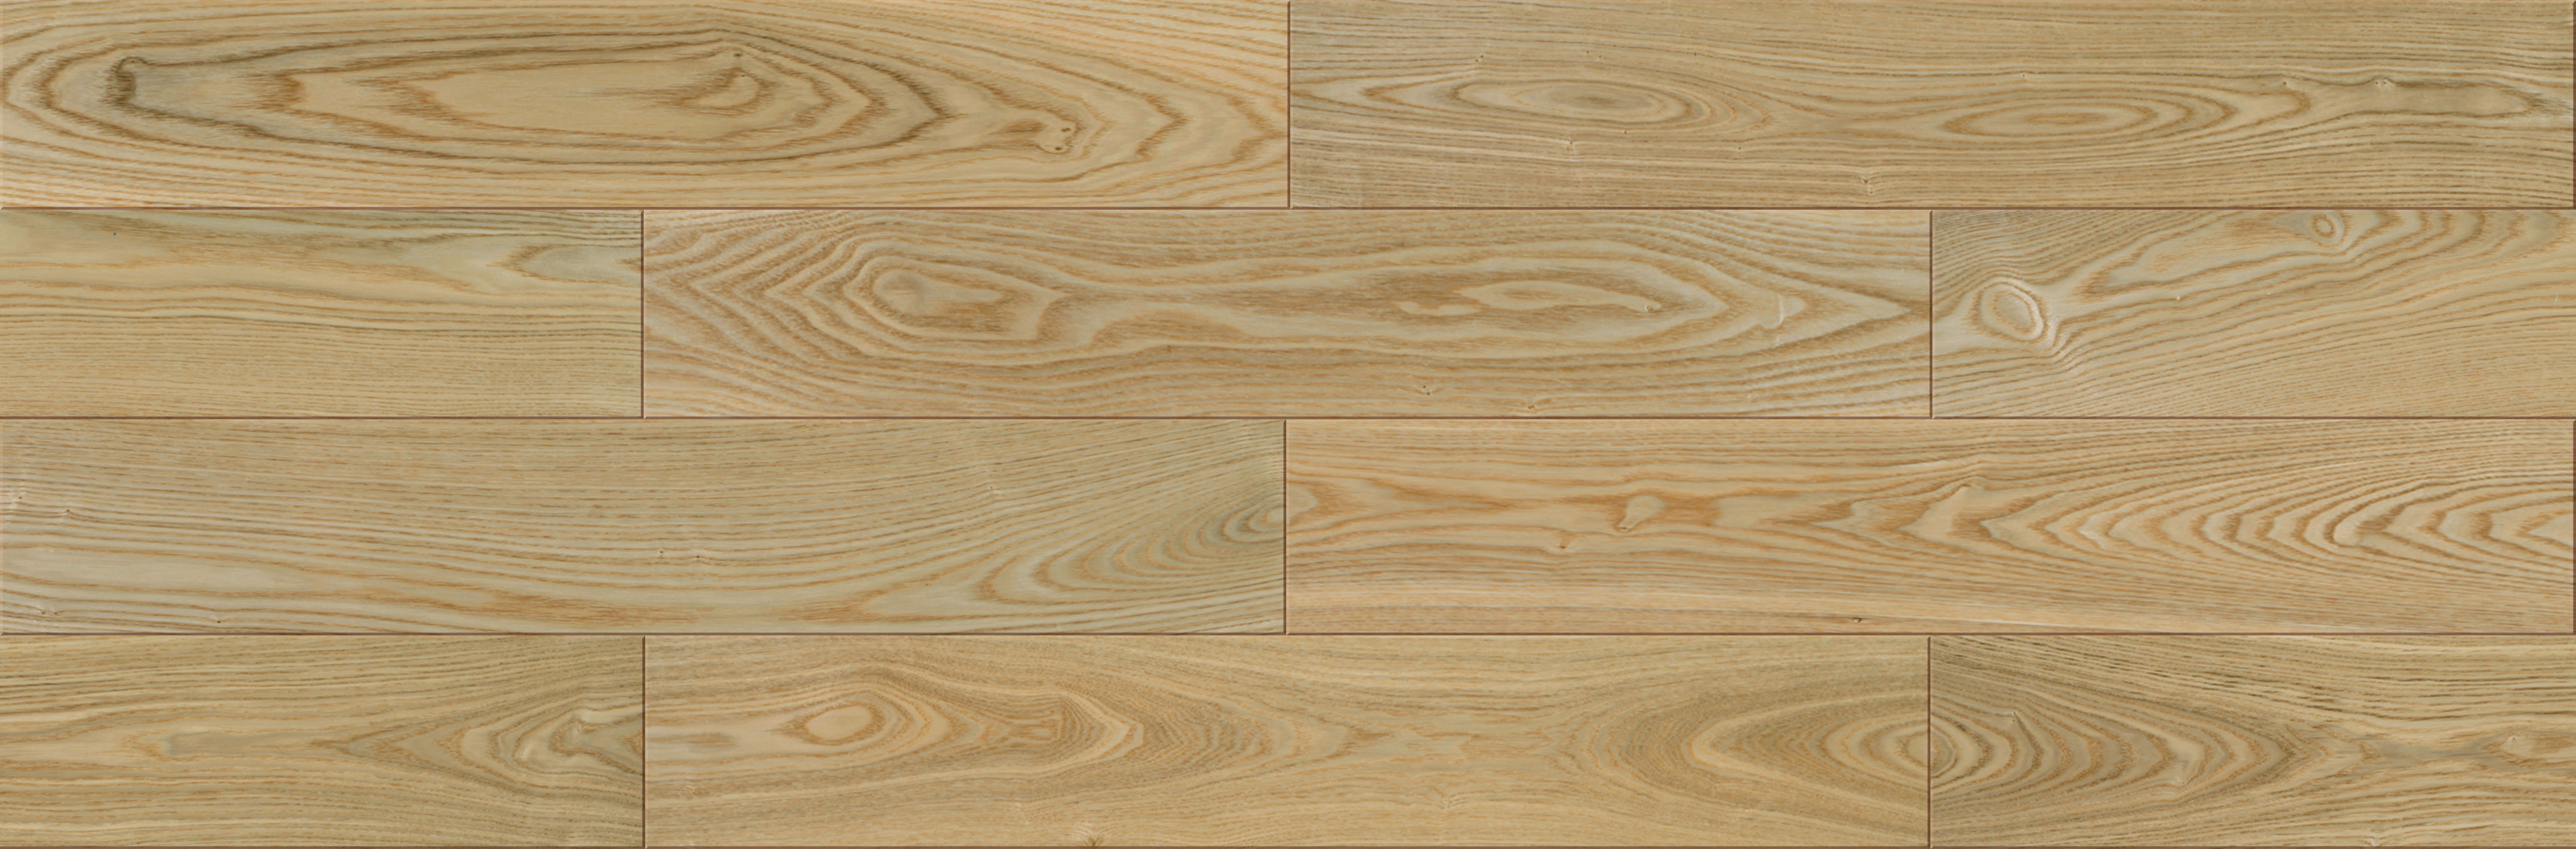 木材-木地板-吉瑞 (1).jpg